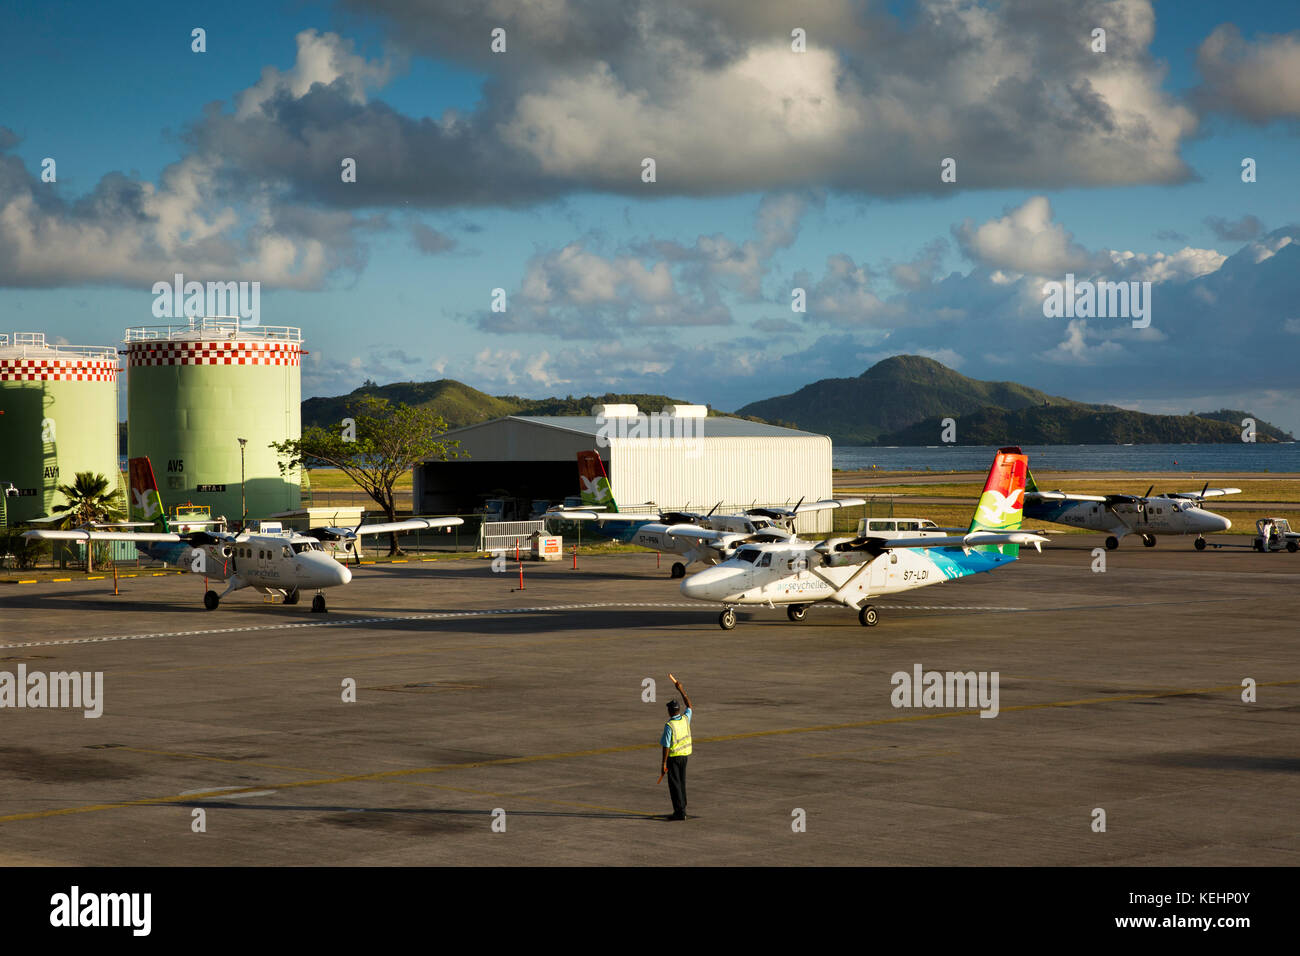 Les Seychelles, Mahe, aéroport, compagnie aérienne Air Seychelles DHC-6 Twin Otter série 400 Banque D'Images